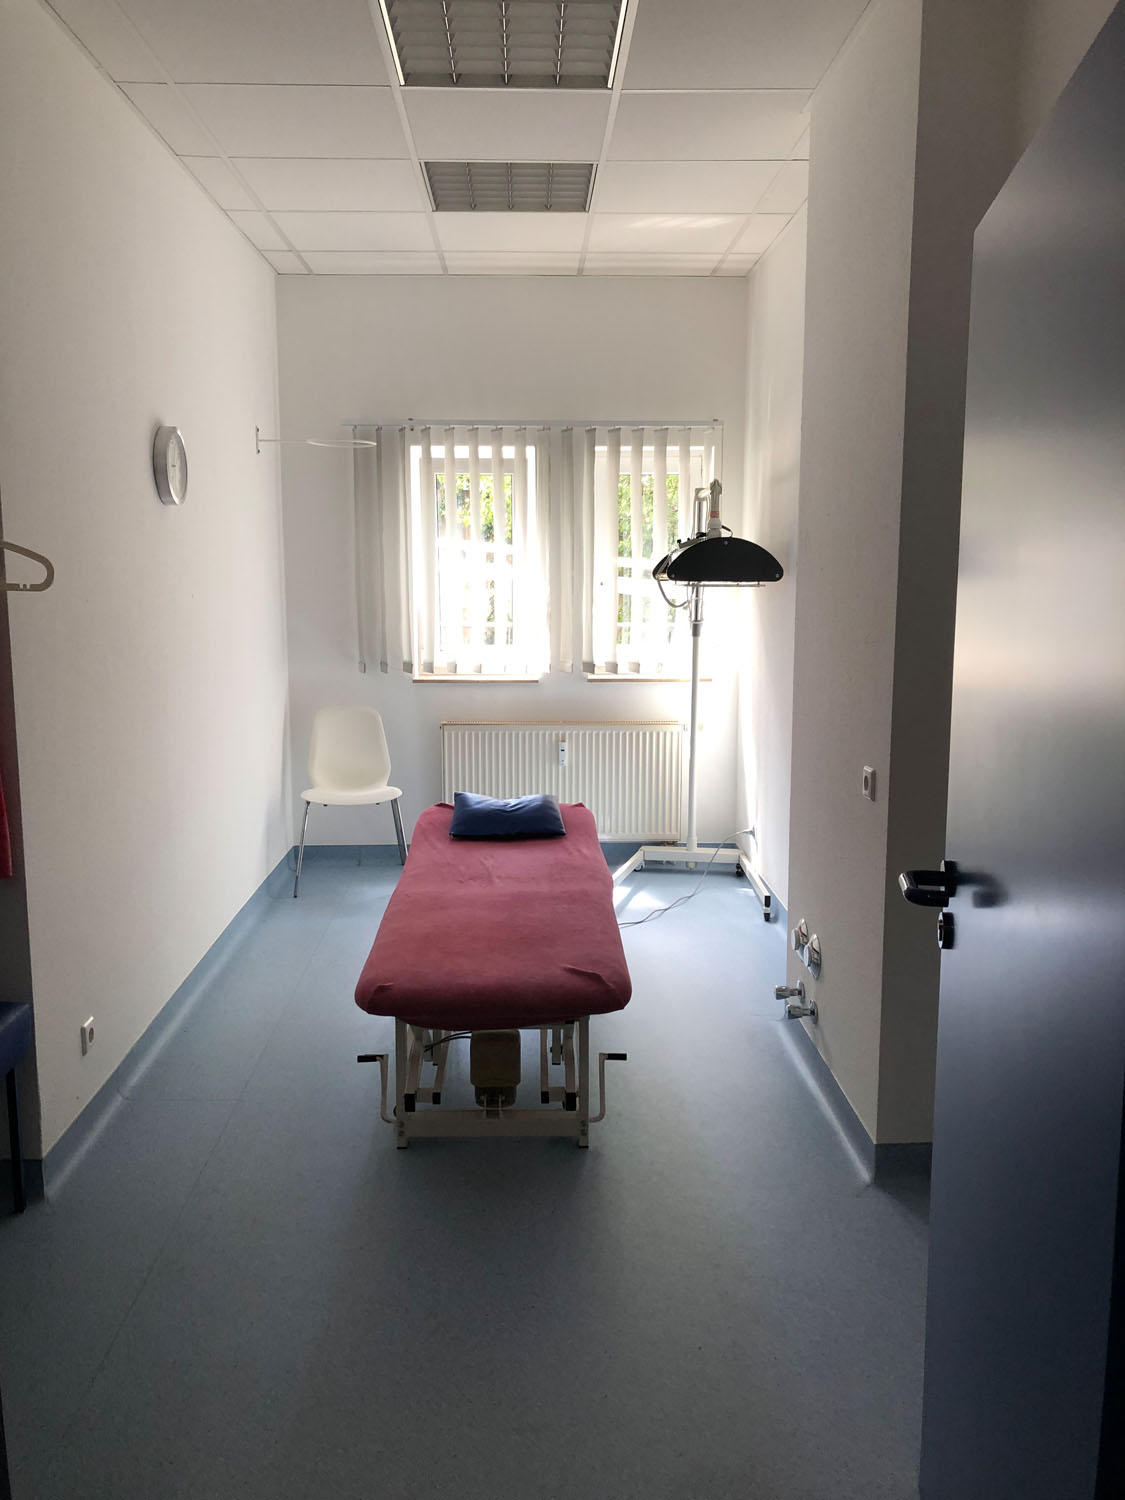 REHA-ZENTRUM Praxis für Ambulante Rehabilitation Siegfried Peter Braun, Europastraße 25/1 in Nürtingen